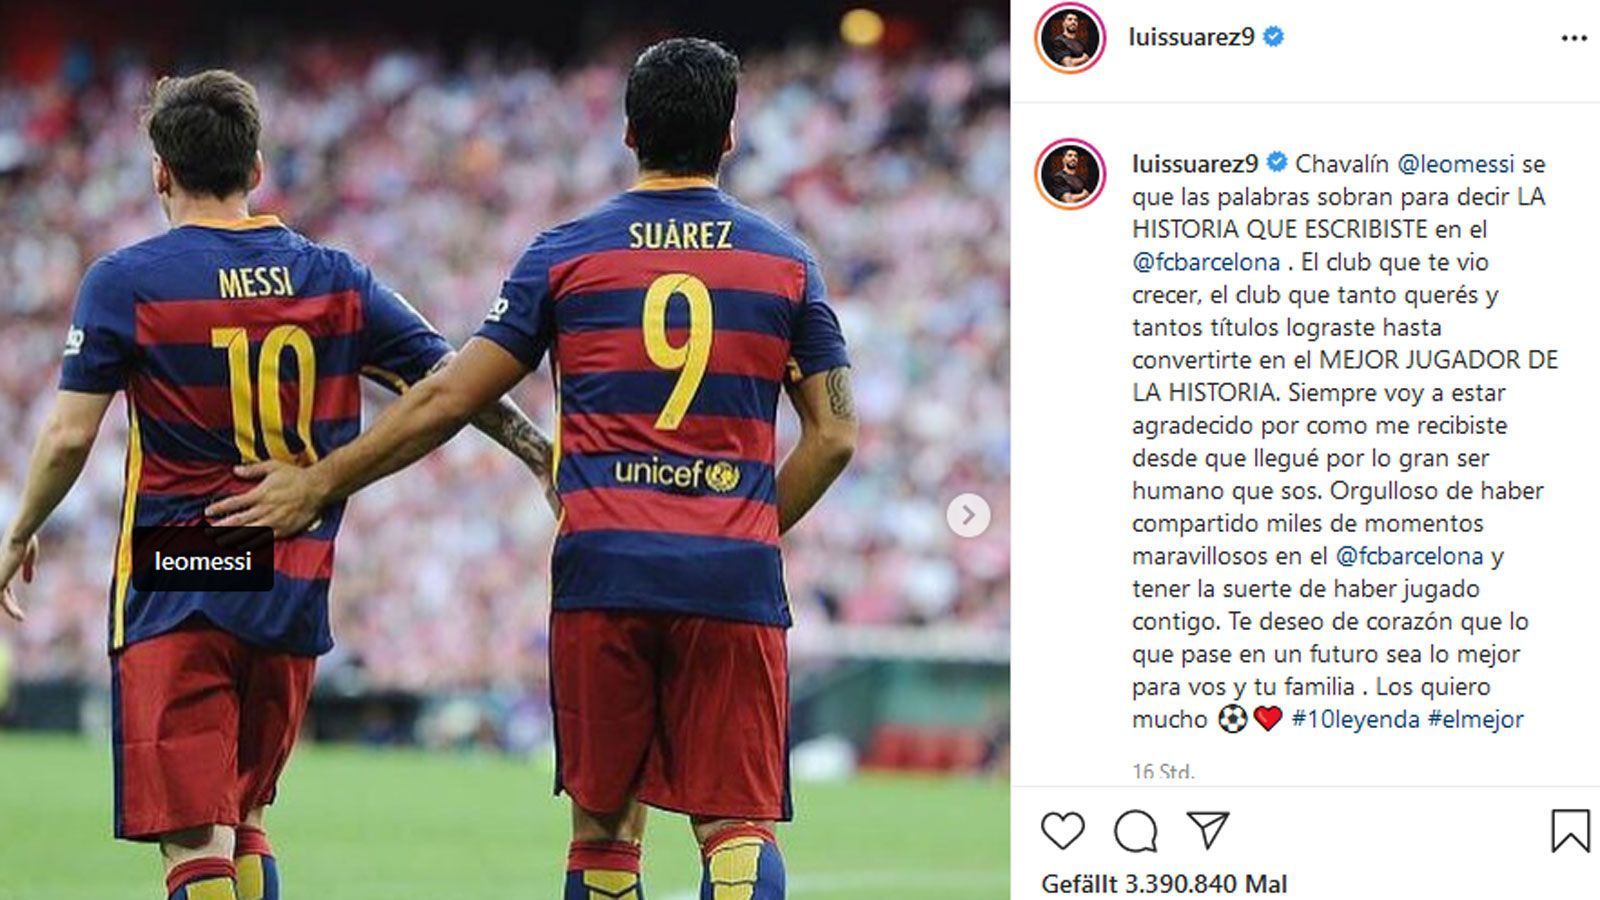 
                <strong>Luis Suarez</strong><br>
                Luis Suarez gilt als bester Kumpel von Messi. Da war es keine Überraschung, dass auch er ein paar Worte übrig hatte. Auf Spanisch schrieb der Ex-Barca-Stürmer bei Instagram: "Kleiner Junge, ich weiß, dass Worte nicht ausreichen, um zu beschreiben, welche GESCHICHTE du beim FC Barcelona geschrieben hast. Der Verein, in dem du aufgewachsen bist, der Verein, den du so sehr liebst und mit dem du so viele Titel gewonnen hast, bis du zum BESTEN SPIELER DER GESCHICHTE wurdest. Ich werde dir immer dankbar dafür sein, wie du mich empfangen hast und was für ein großartiger Mensch du bist. Ich bin stolz darauf, tausende wunderbare Momente beim FC Barcelona erlebt zu haben und das Glück gehabt zu haben, mit dir zusammenzuspielen. Ich wünsche dir von ganzem Herzen, dass alles, was in Zukunft passiert, das Beste für dich und deine Familie sein wird. Ich liebe dich so sehr." Als Hashtags setzte er "10Legende" und "Der Beste" dahinter.
              